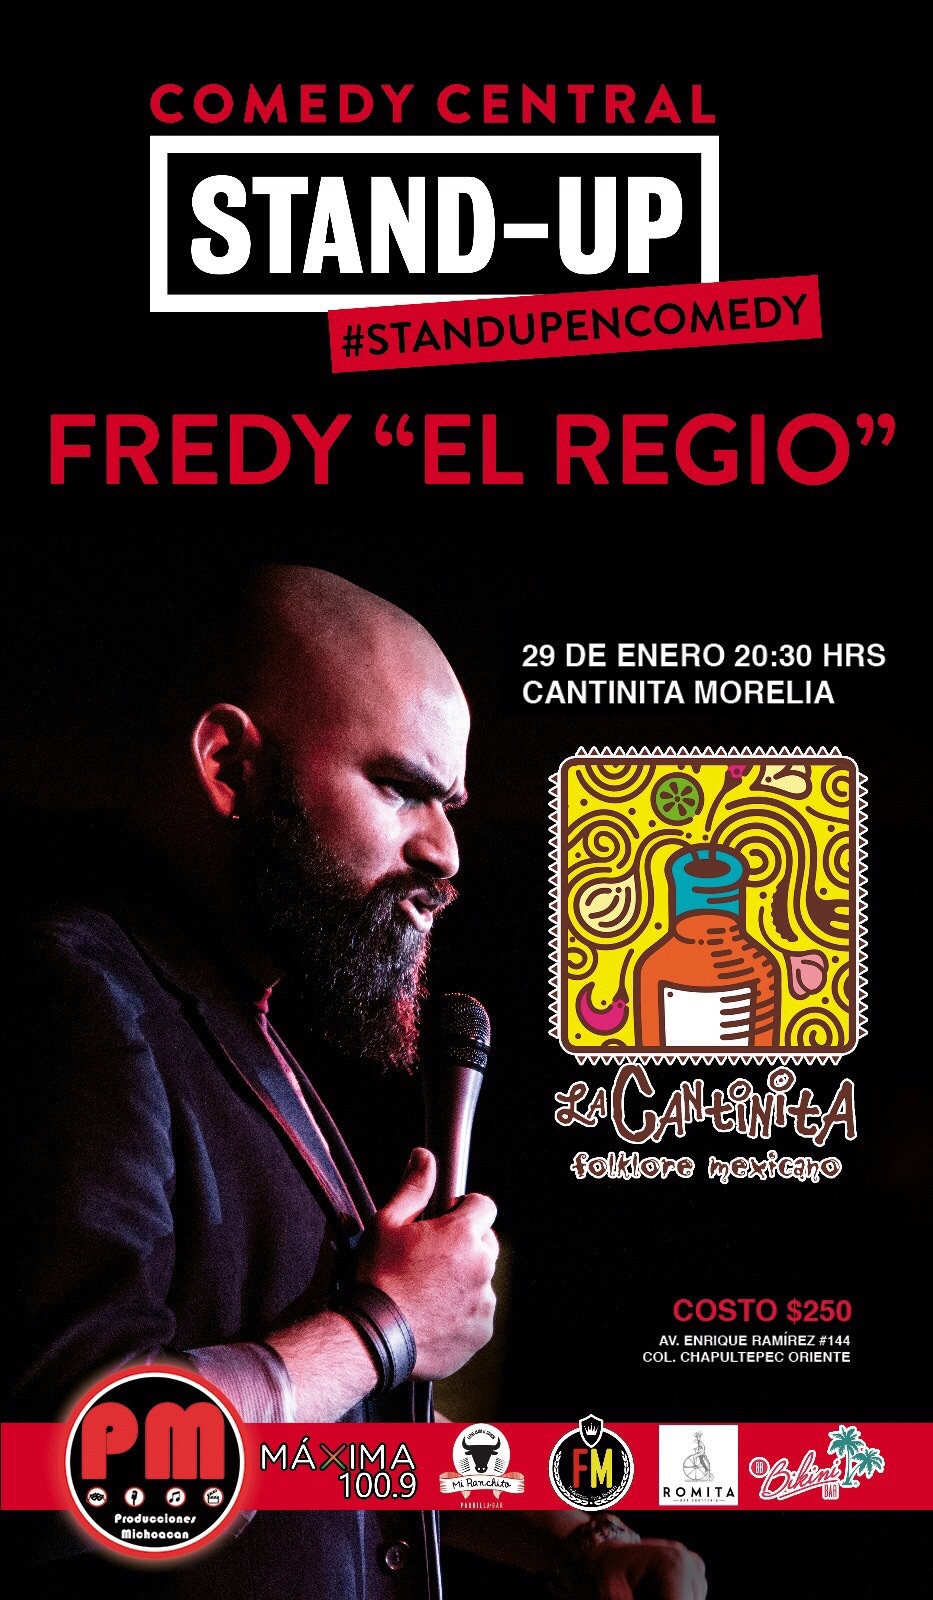 FREDDY EL REGIO MORELIA